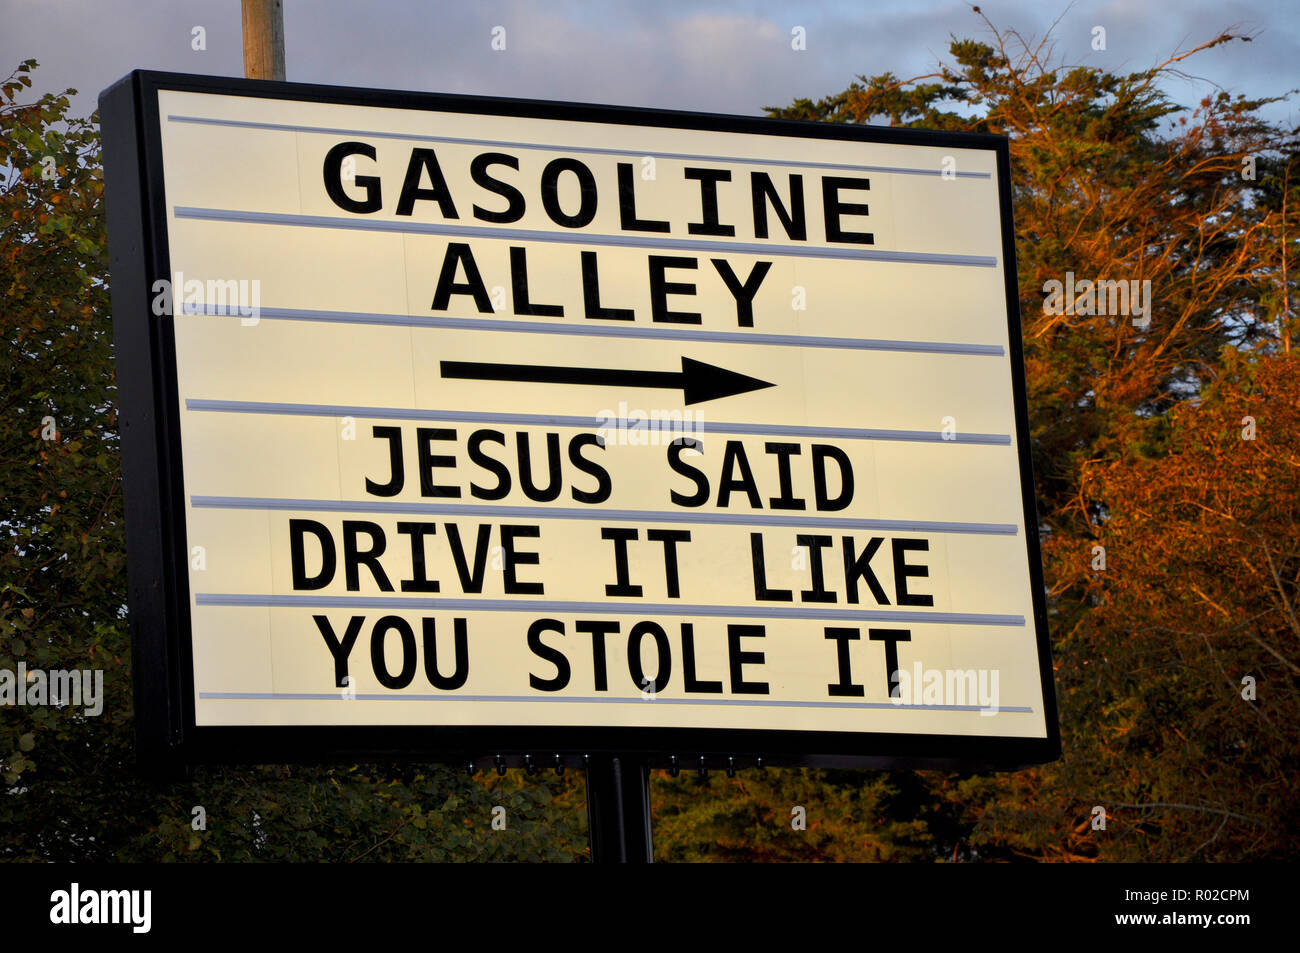 Fahren Sie es so, wie Du es gestohlen hat. Goodwood Revival Gasoline Alley humorvoll Zeichen Slogan "Jesus sagte, dass sie es so, wie Du es gestohlen hat". Witz Nachricht. Religiöse Spaß Stockfoto